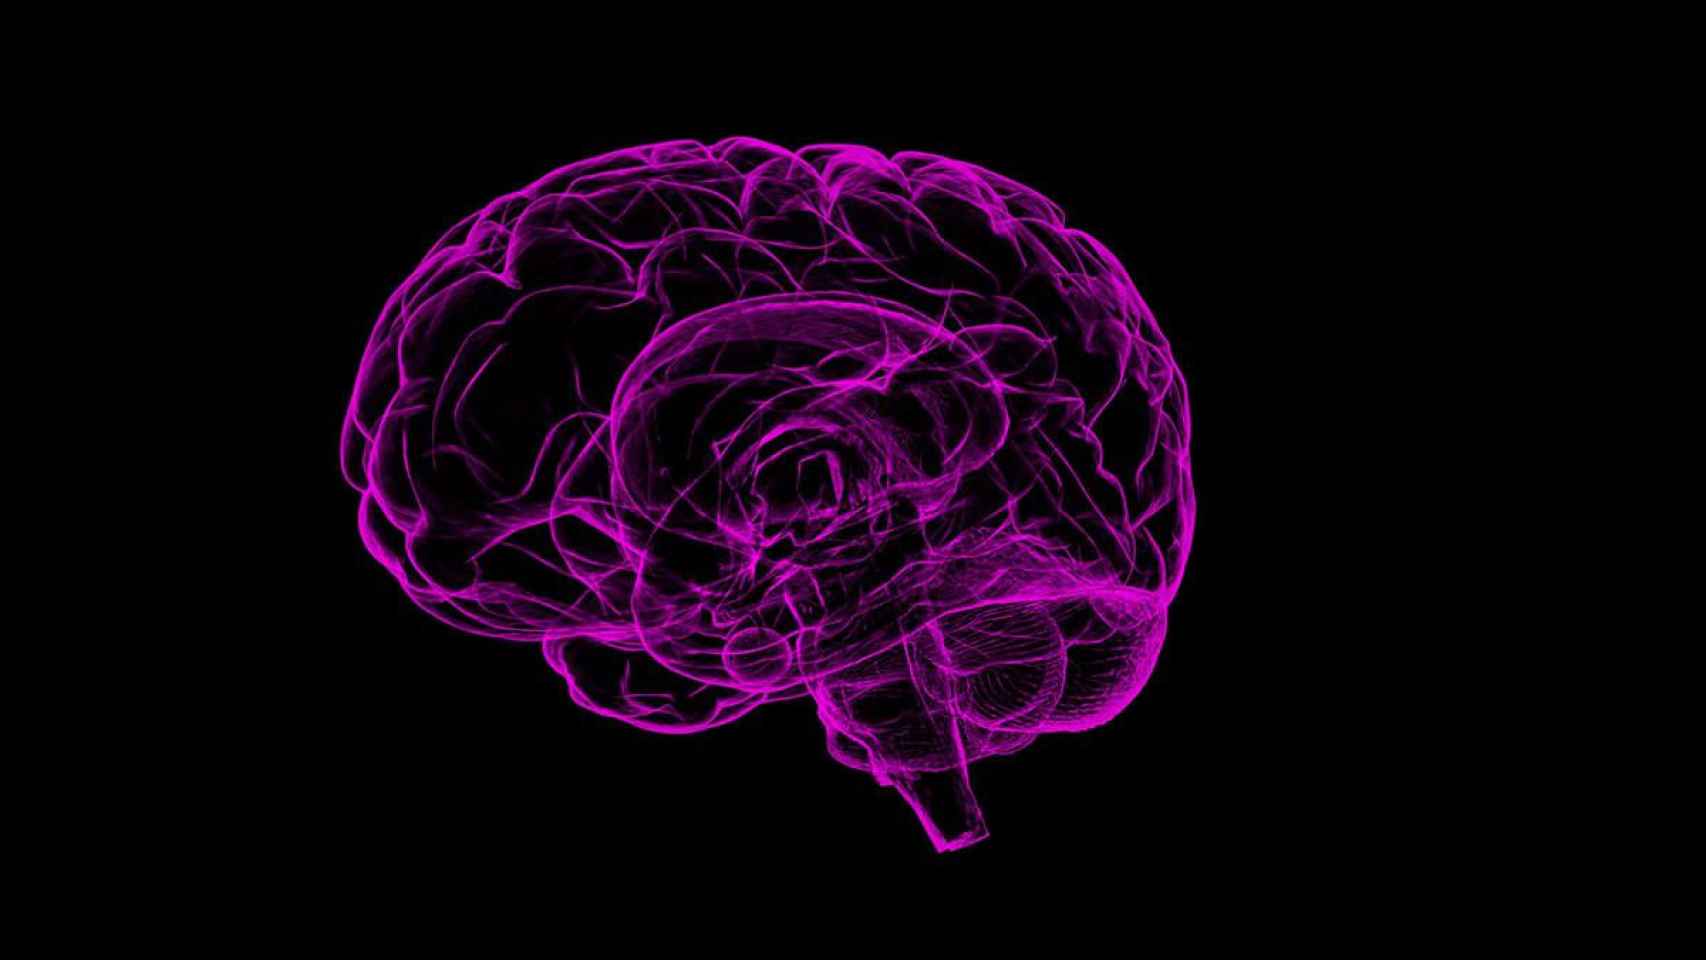 Imagen digital de stock de un cerebro / PIXABAY